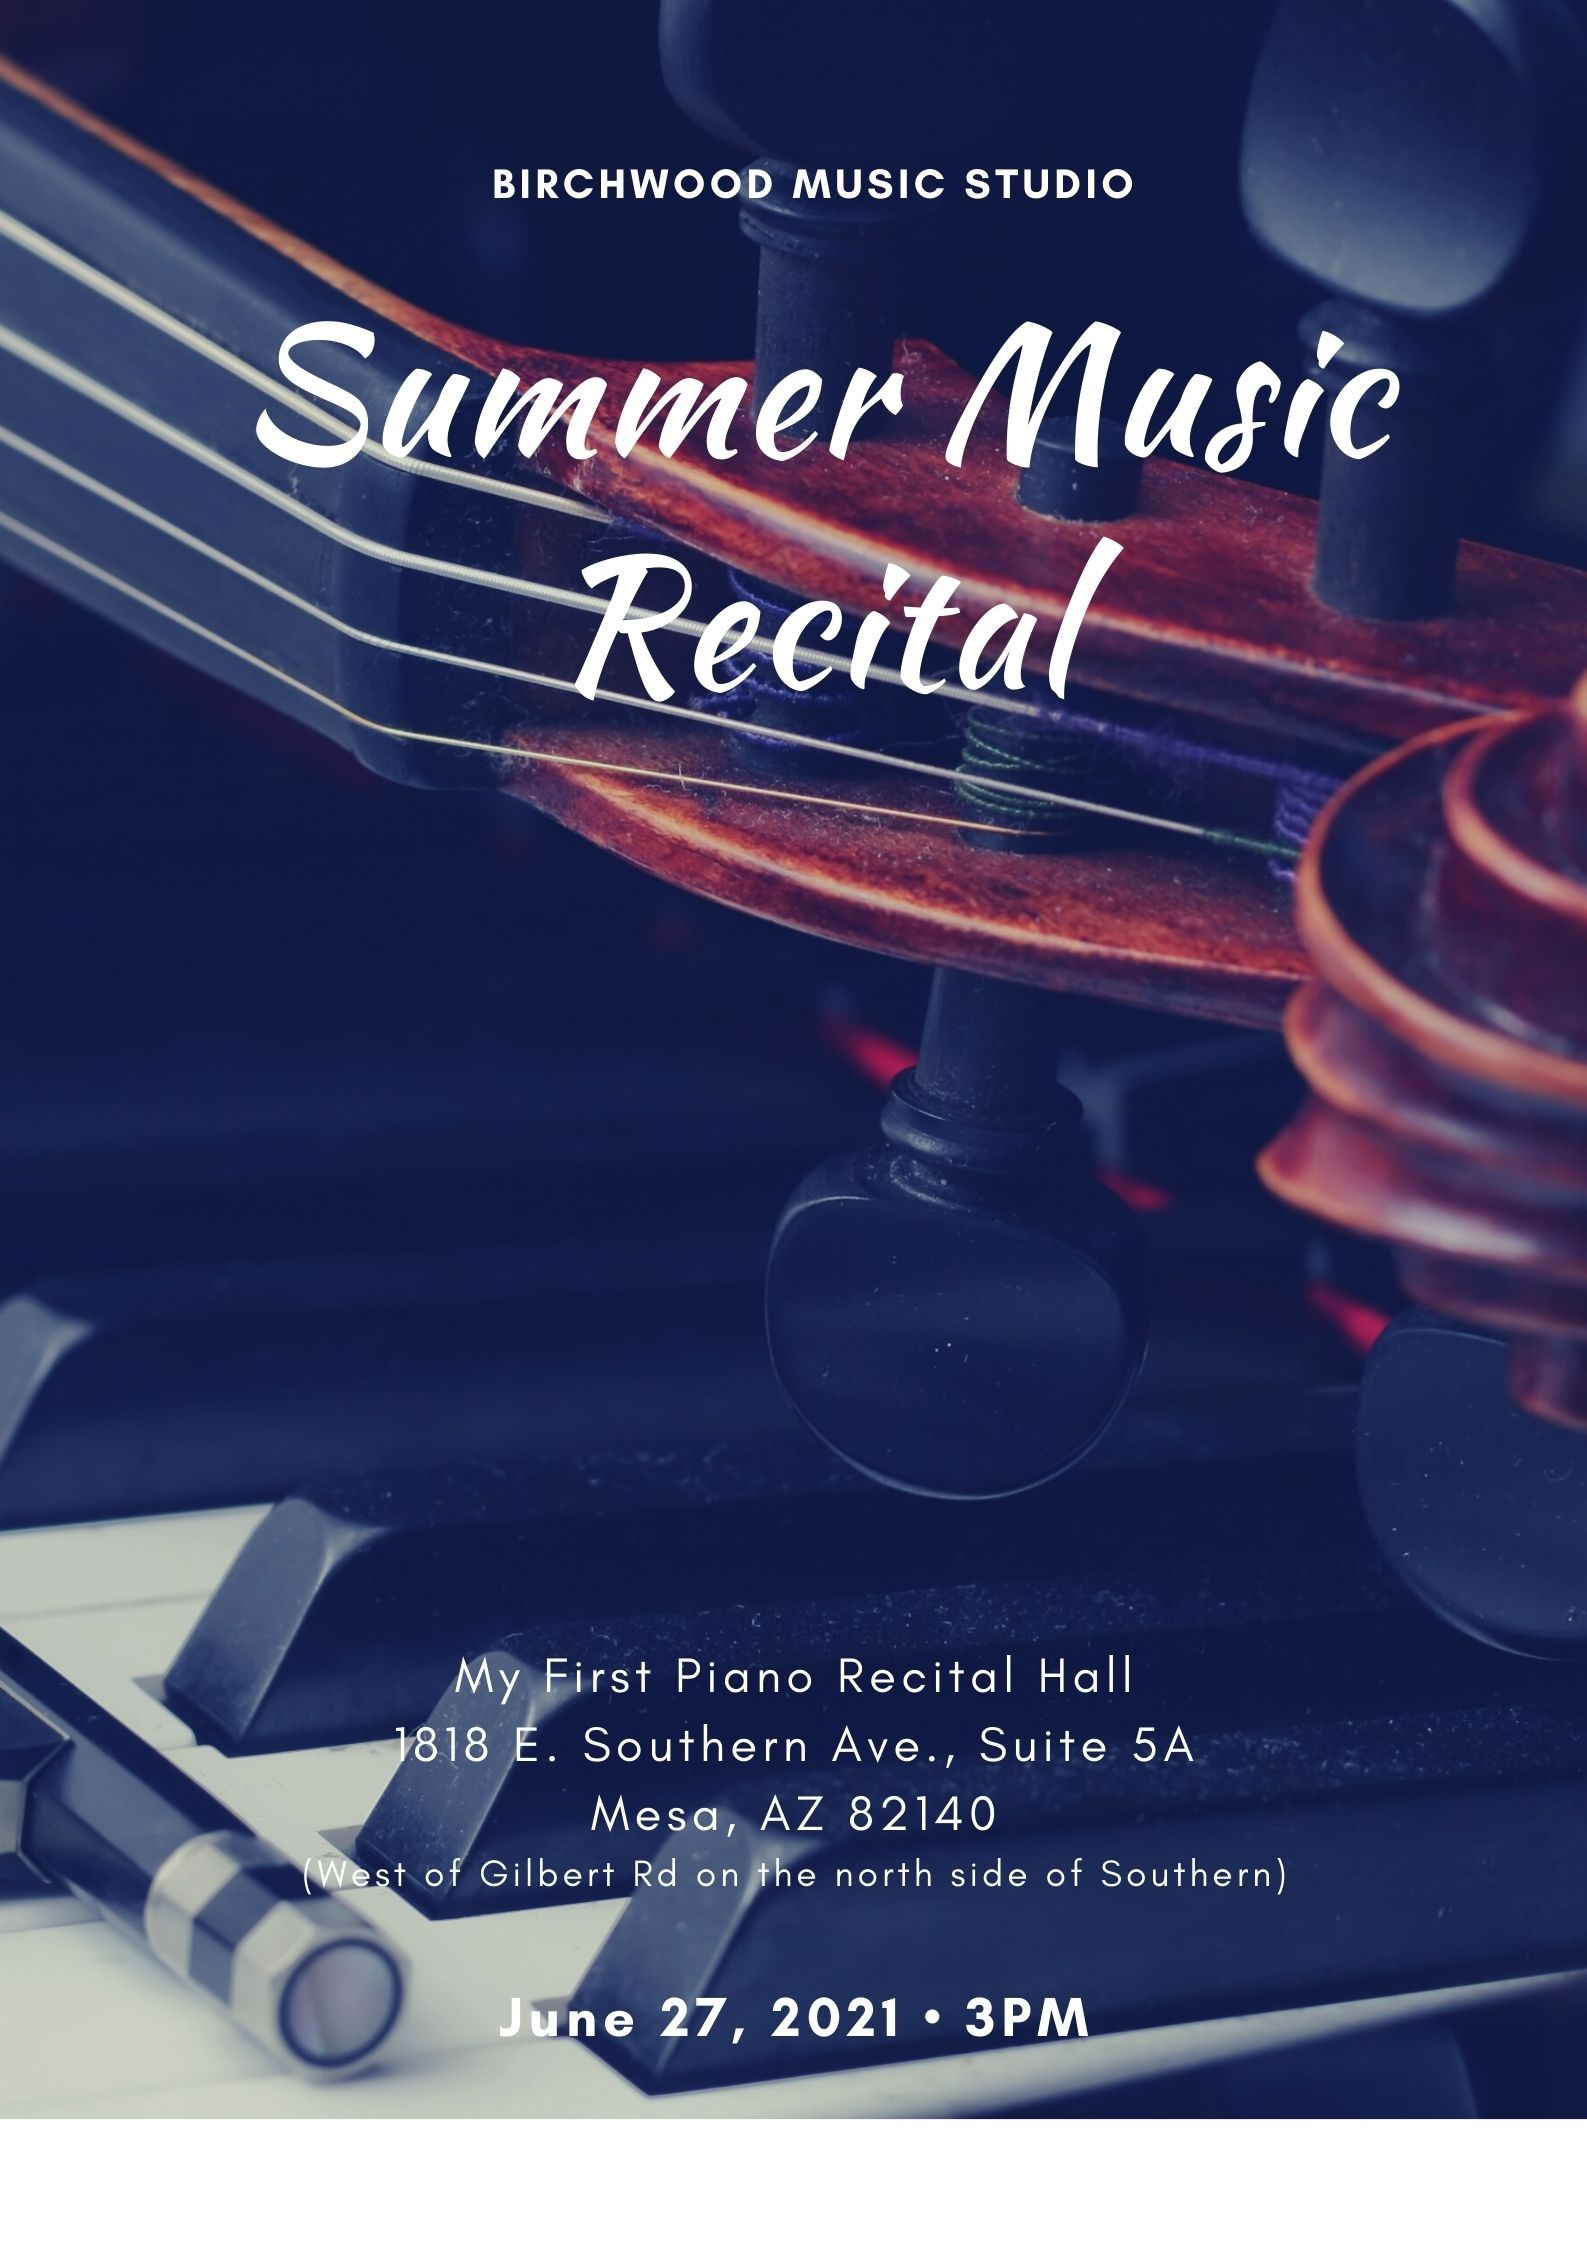 Summer Music Recital Announcement